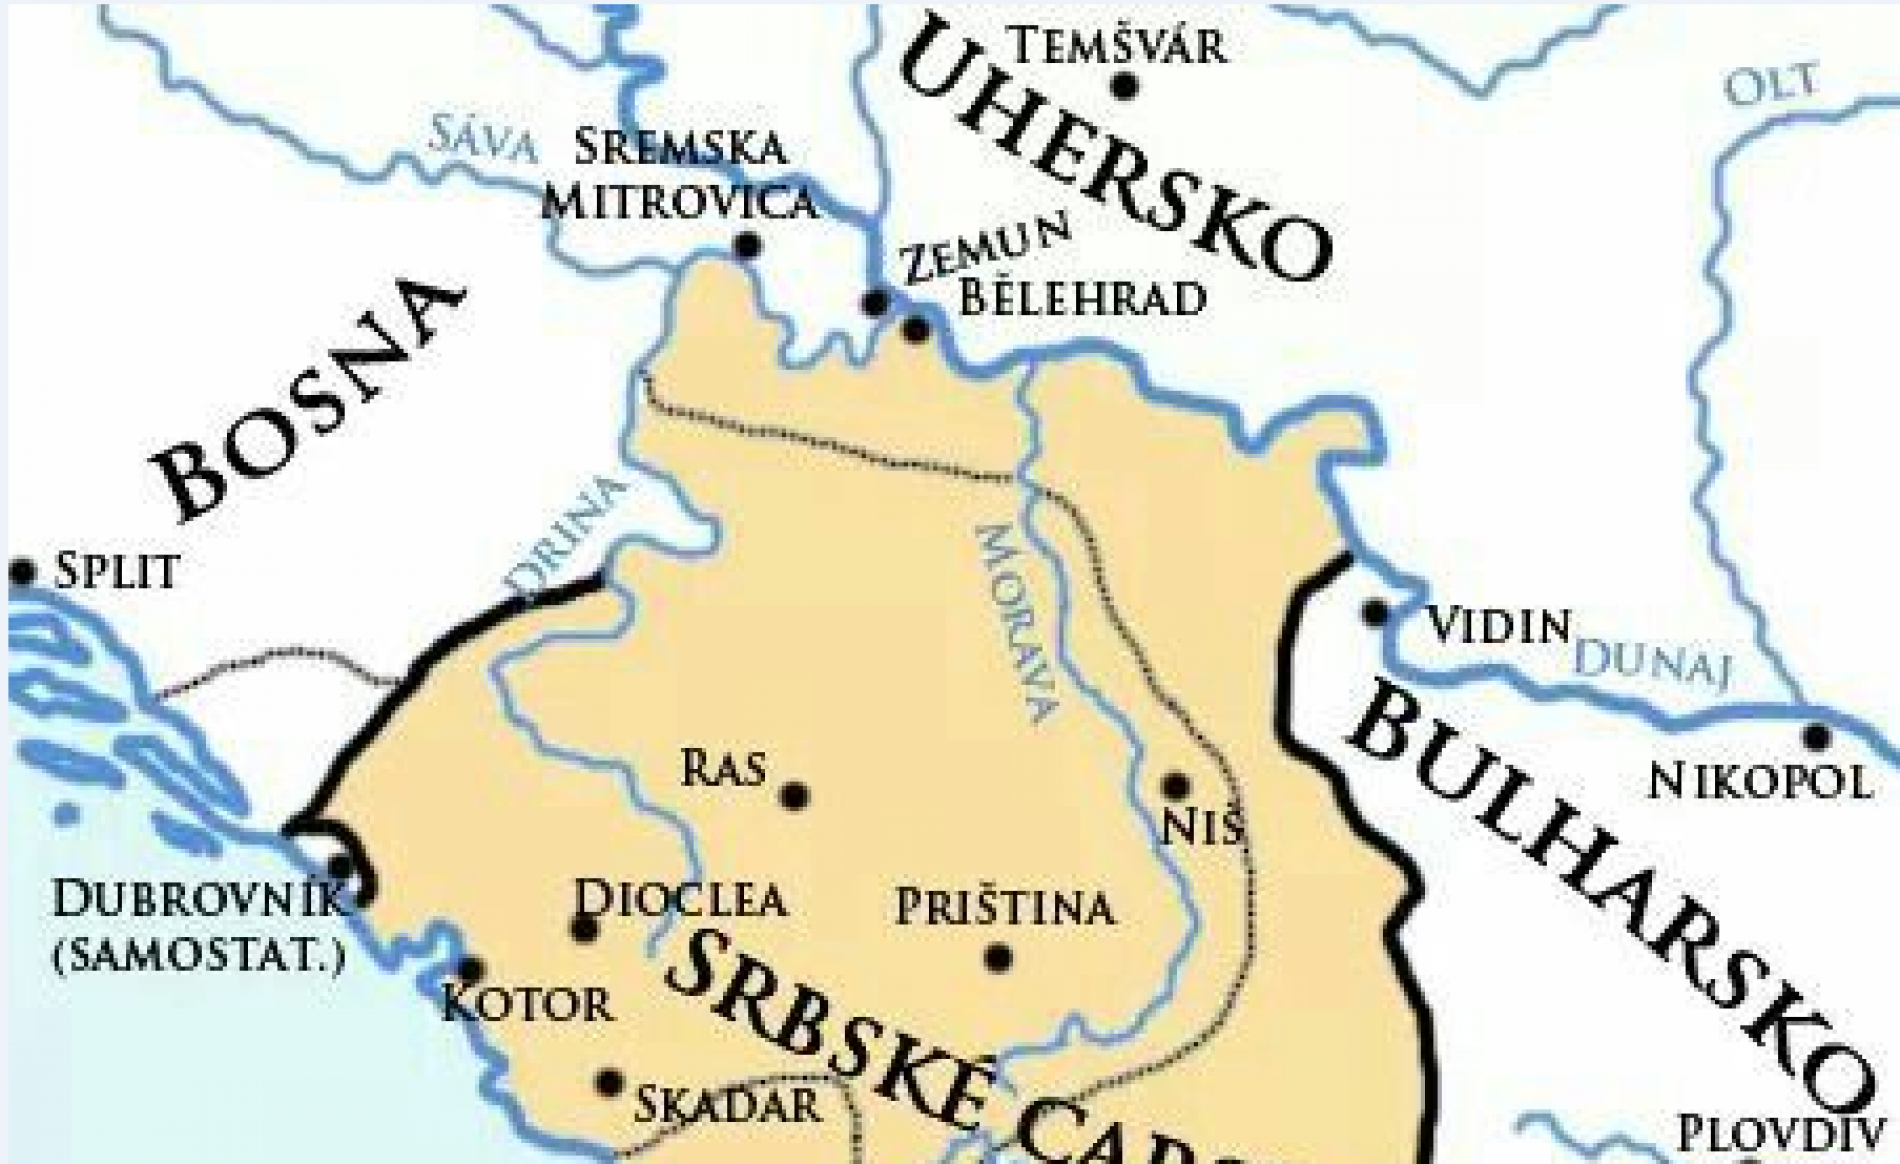 Pokušava li vladajuća elita Srbije obnoviti Dušanovo carstvo i kakve to veze ima s Bosnom?